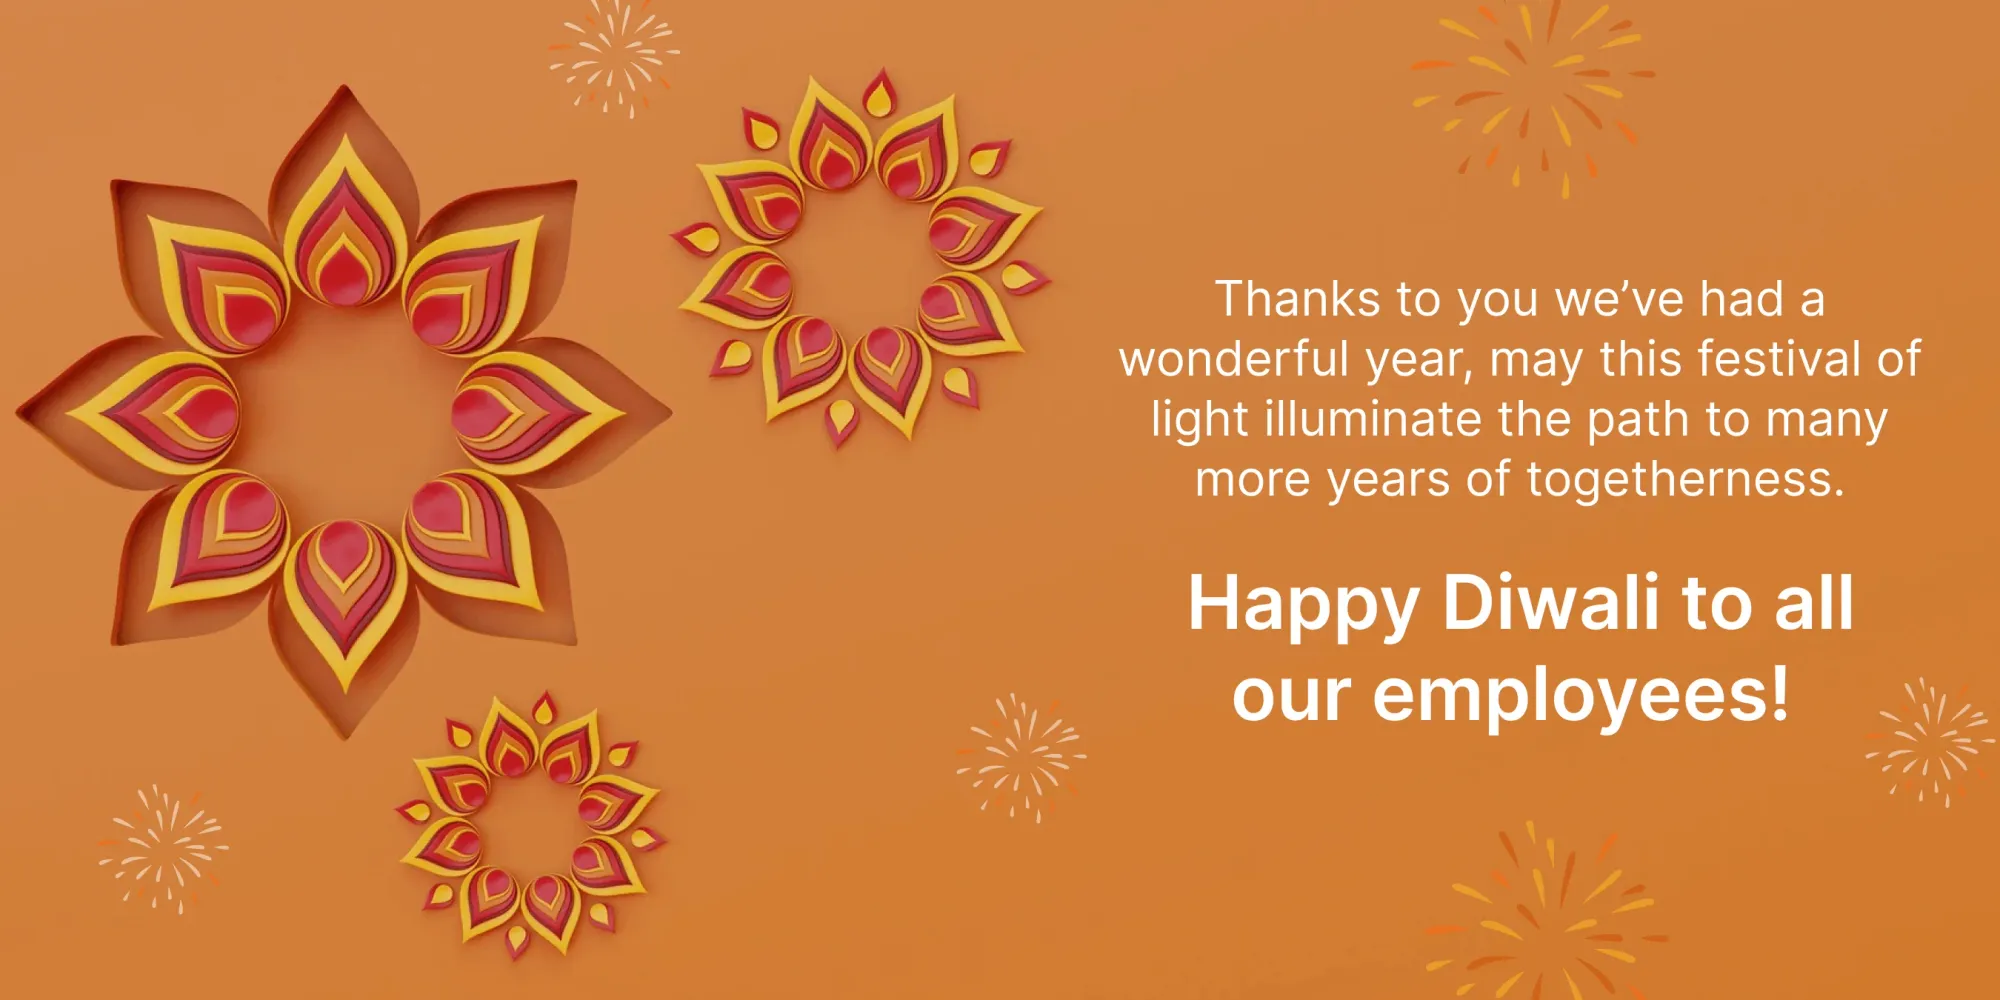 Des vœux de Diwali uniques pour les employés